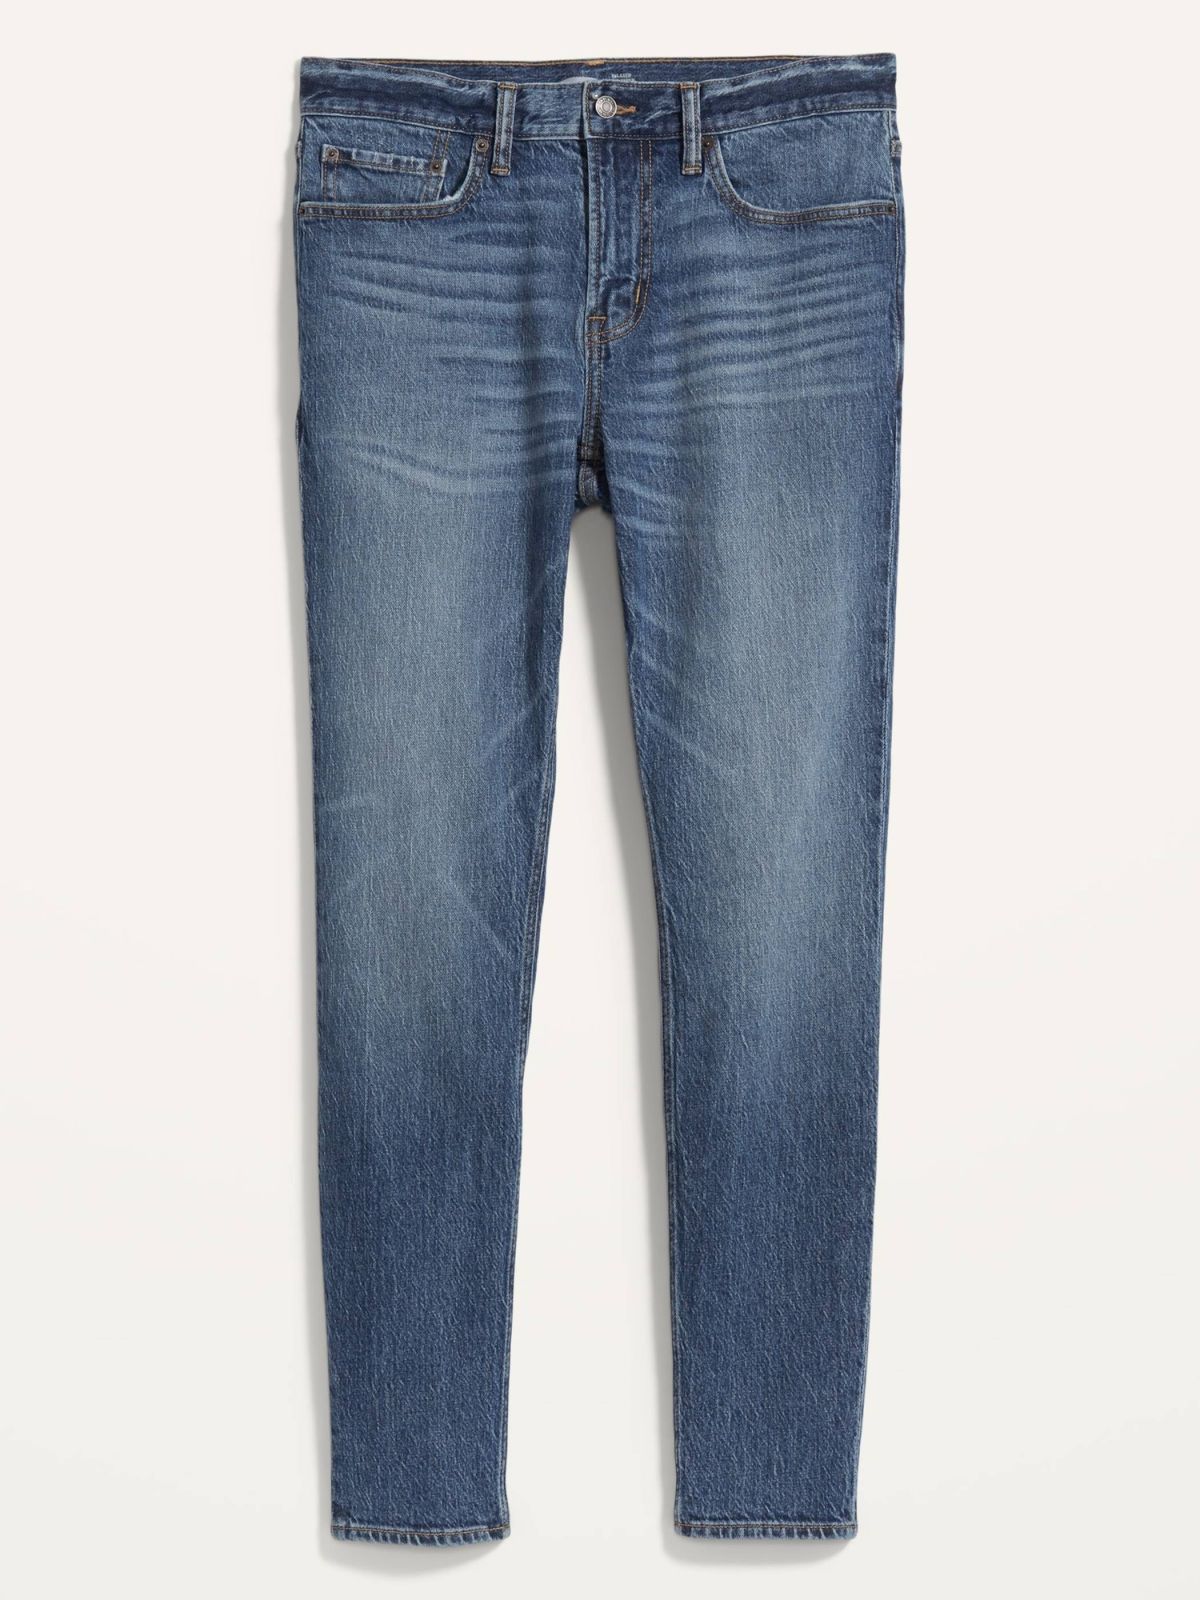  ג'ינס ארוך בגזרת Slim של OLD NAVY